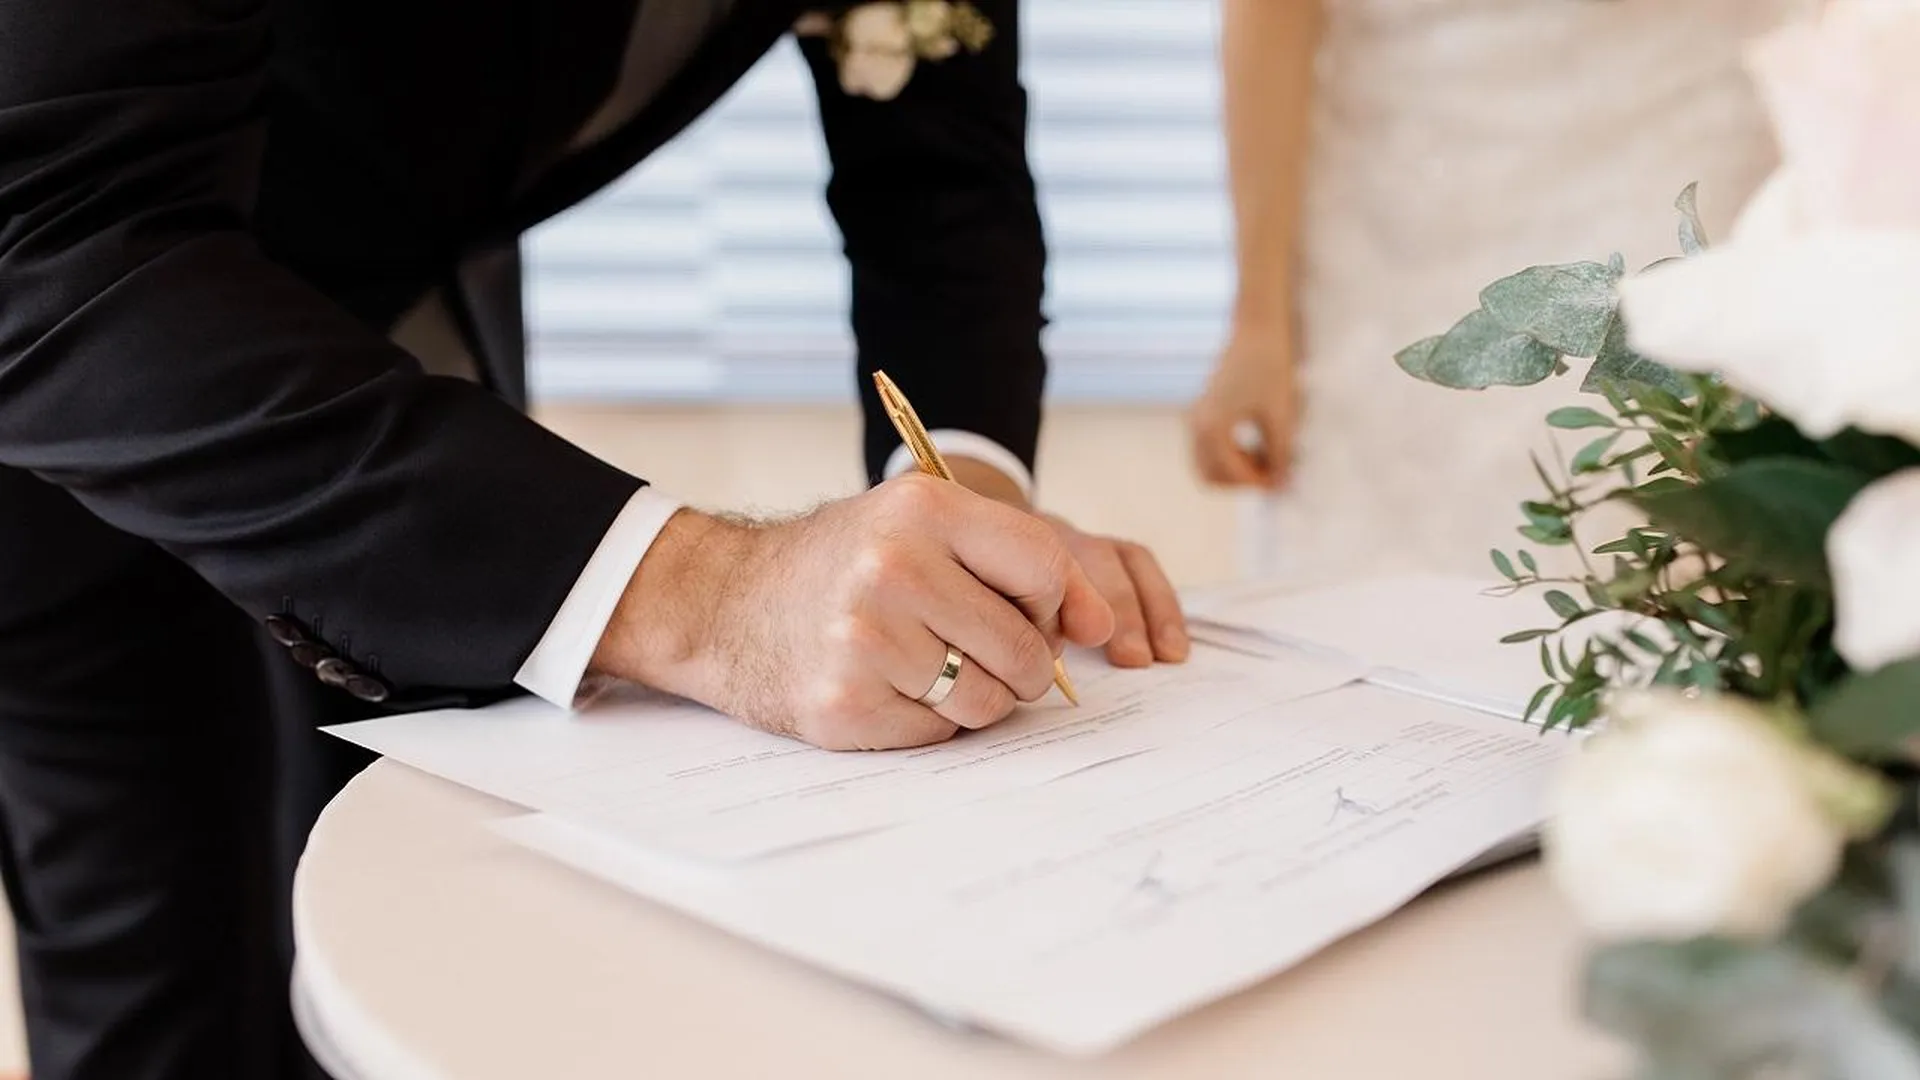 Договоритесь на берегу: как умалчивание финансовых вопросов может разрушить даже крепкий брак